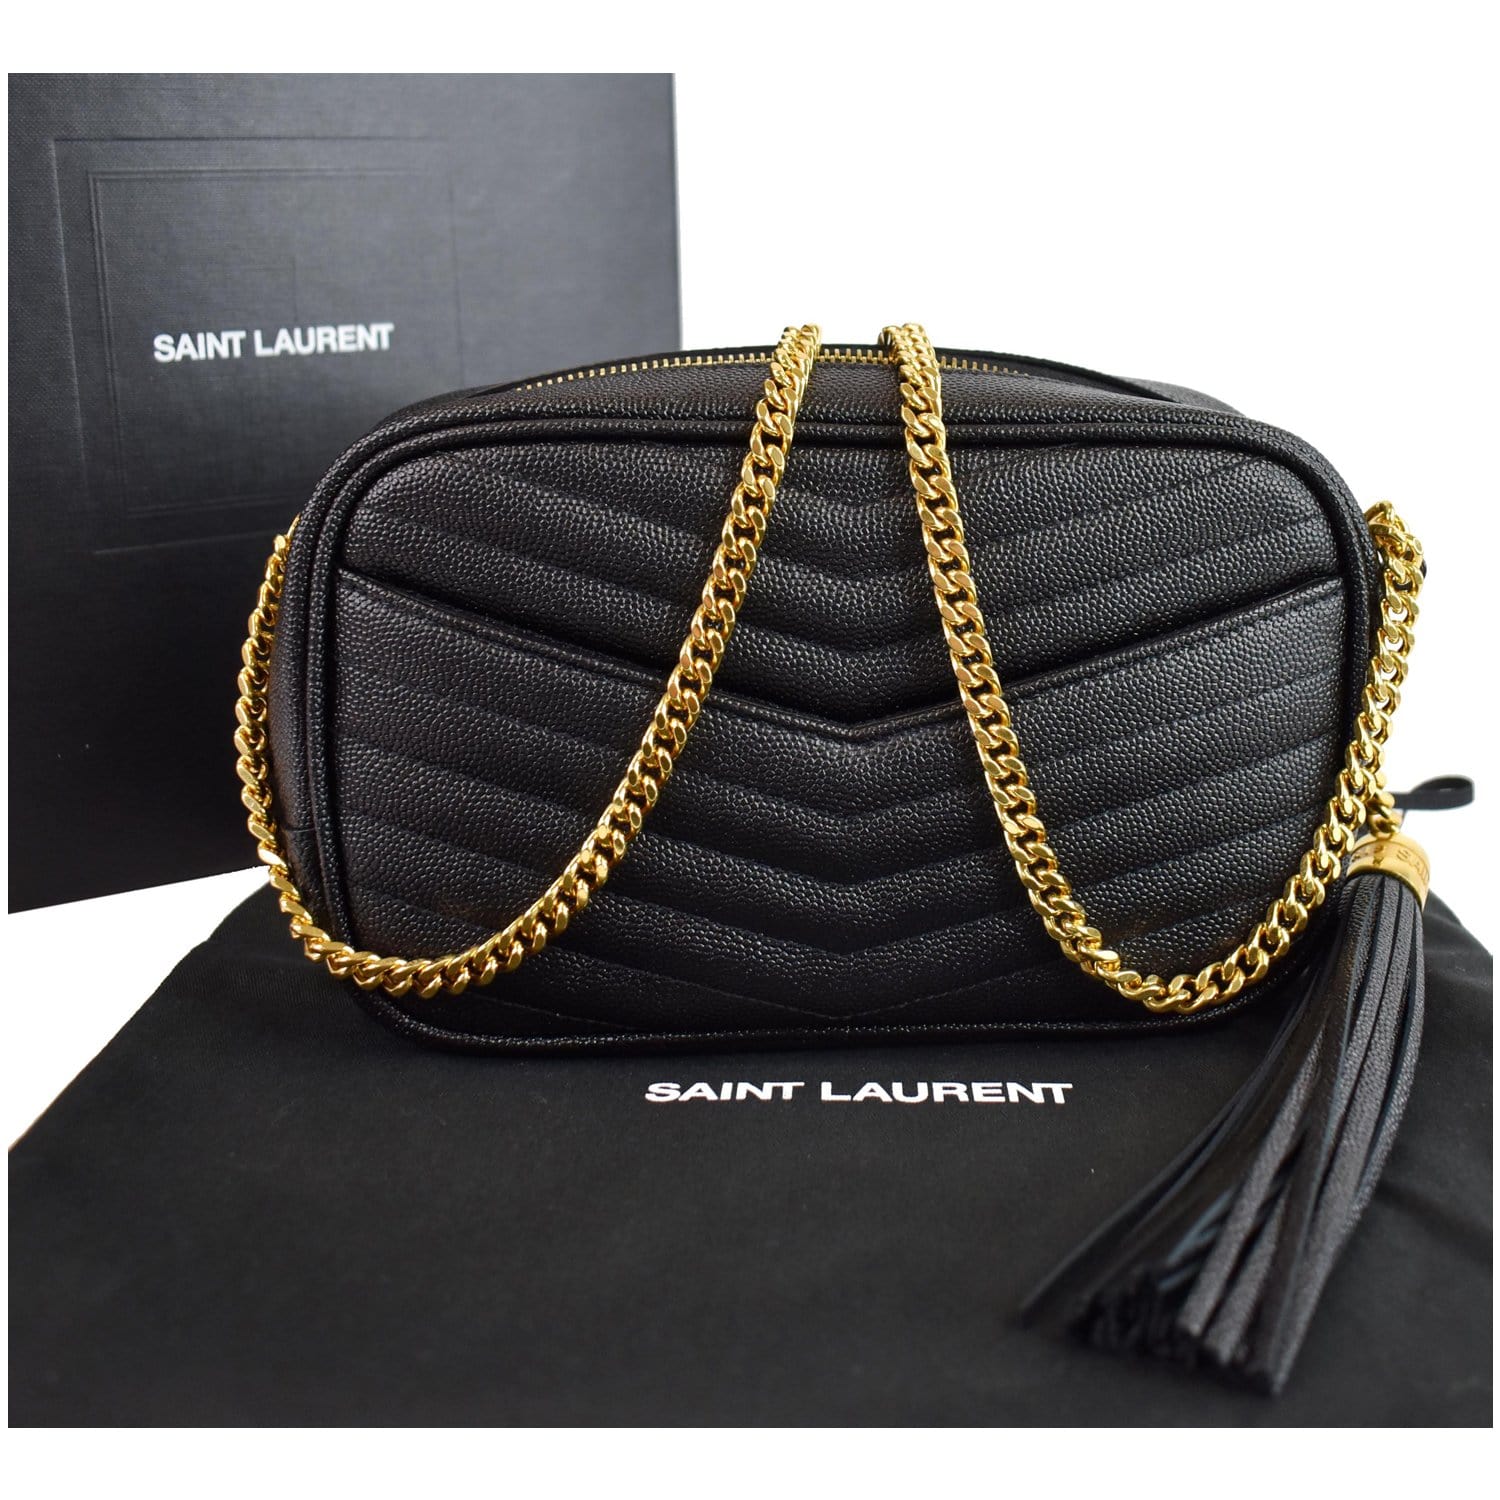 SAINT LAURENT - Mini Lou quilted leather shoulder bag